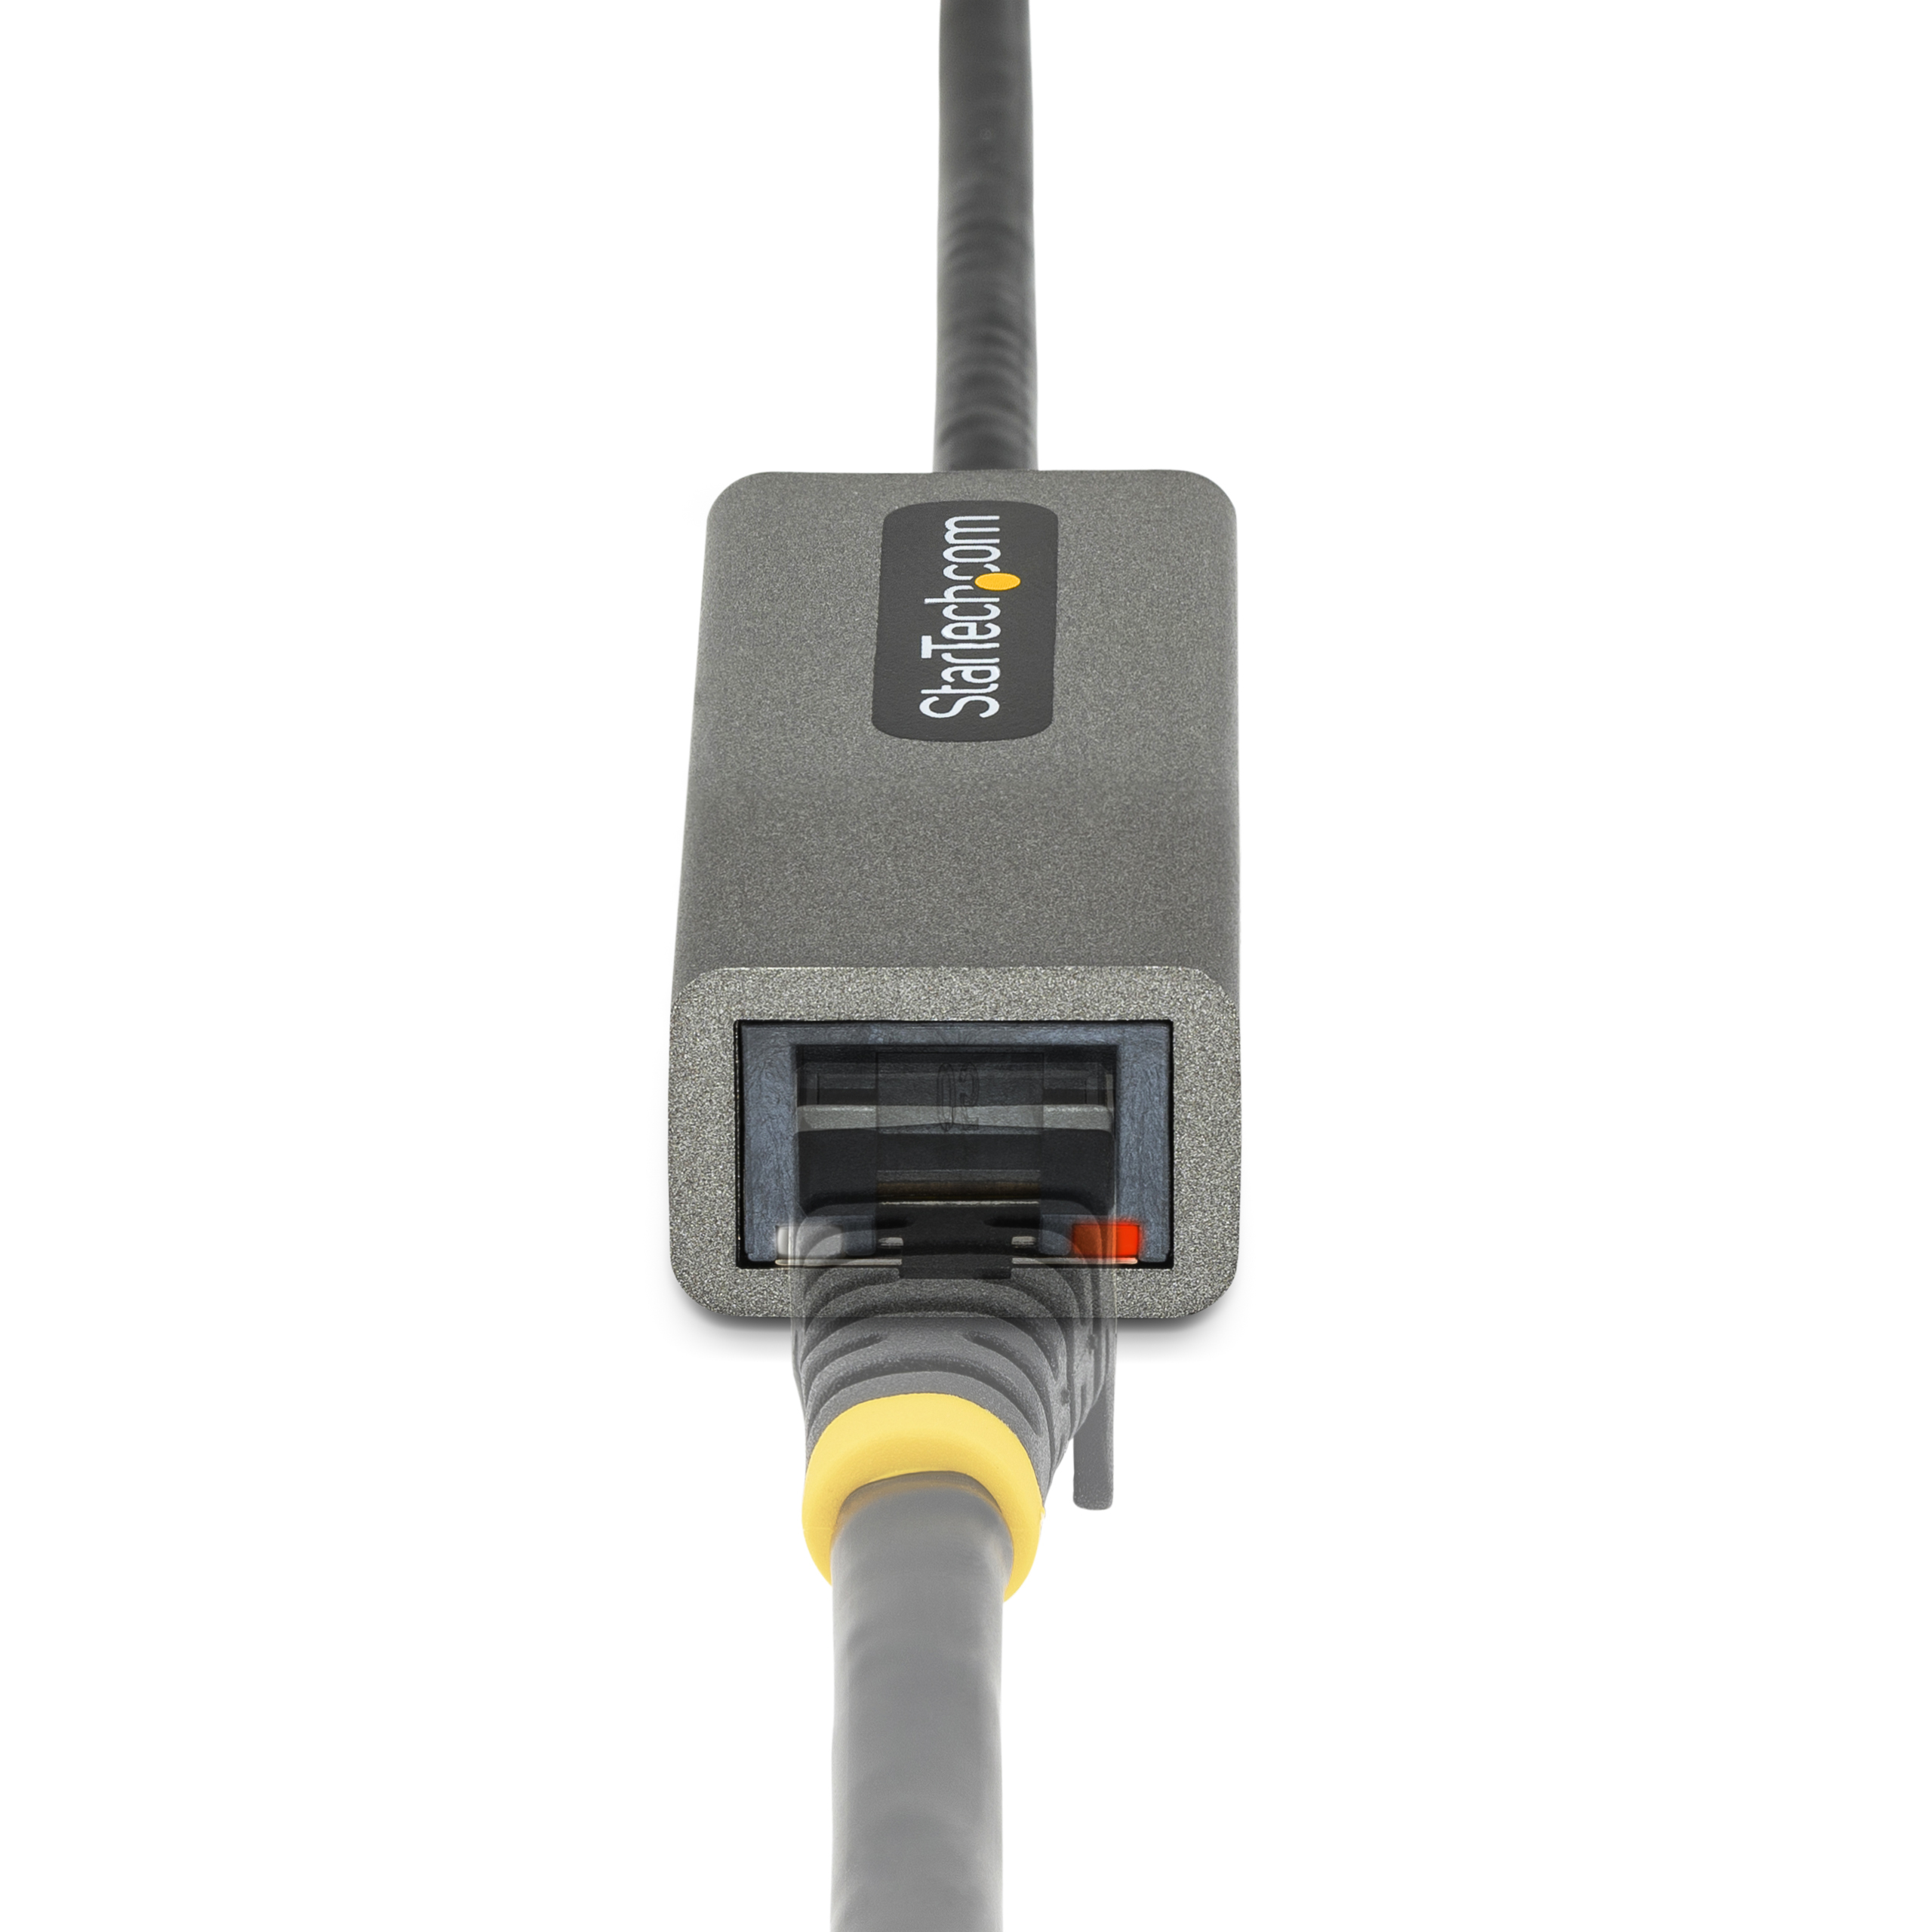 Adaptateur Réseau USB 3.0 à Gigabit Ethernet - 10/100/1000 Mbps, USB à  RJ45, Adaptateur USB 3.0 à LAN, Adaptateur USB 3.0 Ethernet (GbE), Câble de